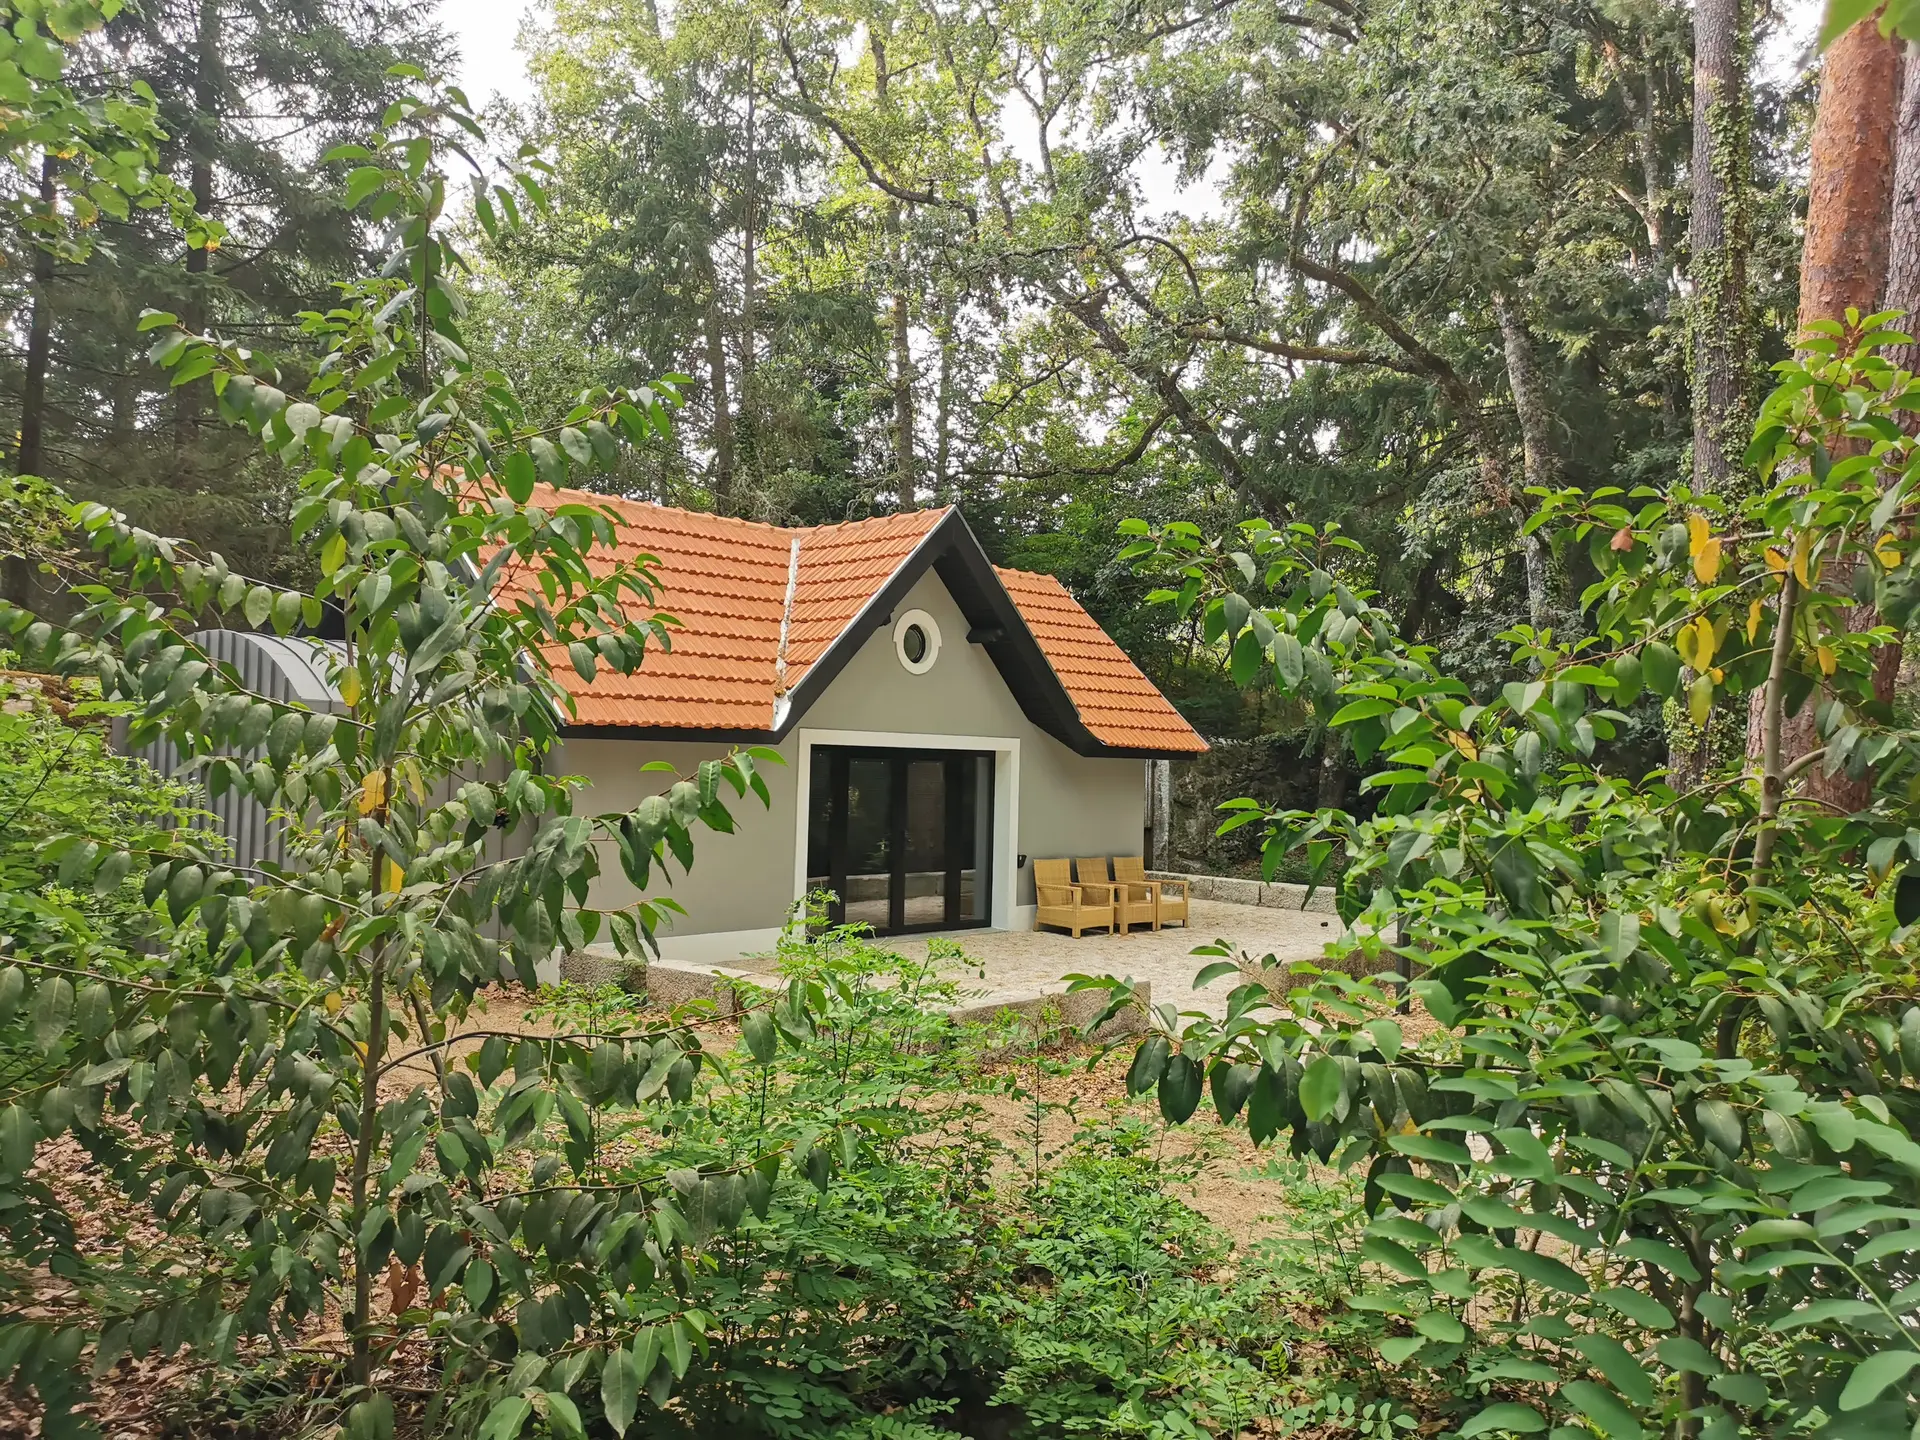 Conheça as novas casas ecológicas escondidas na floresta do Parque de Pedras Salgadas